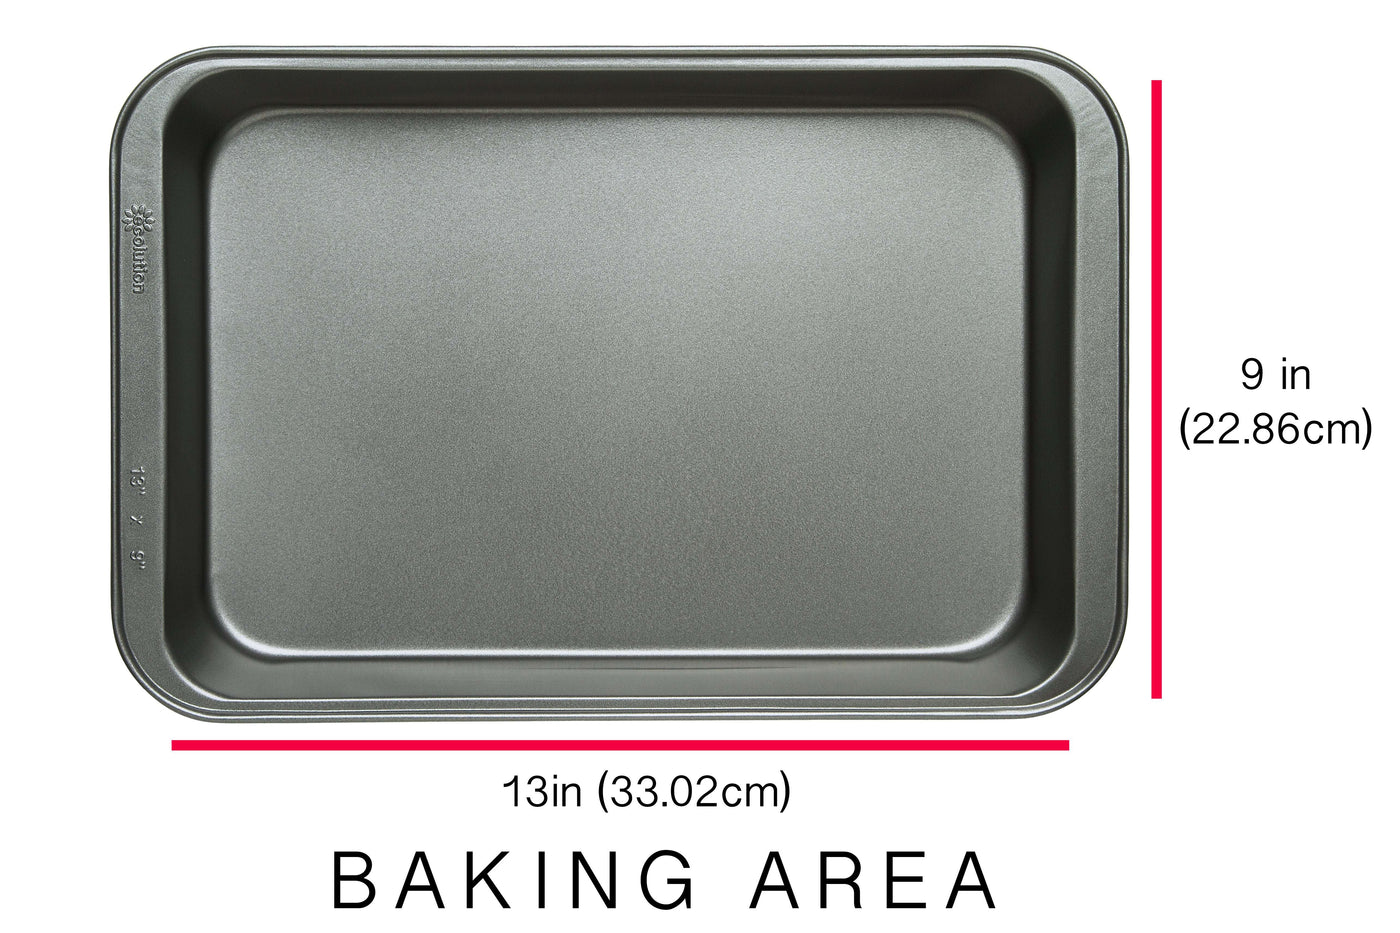 Choice 13 x 9 Rectangular Aluminum Cake Pan